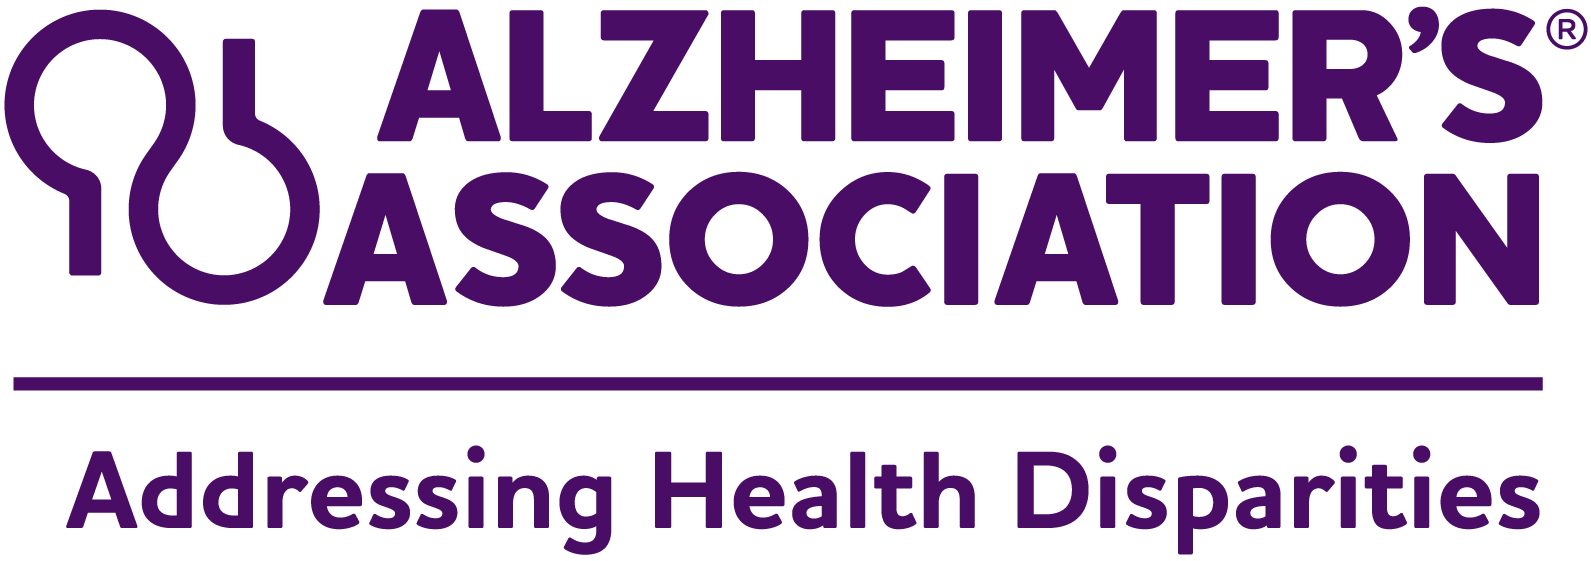 Alzheimer's Association | Addressing Health Disparities Logo